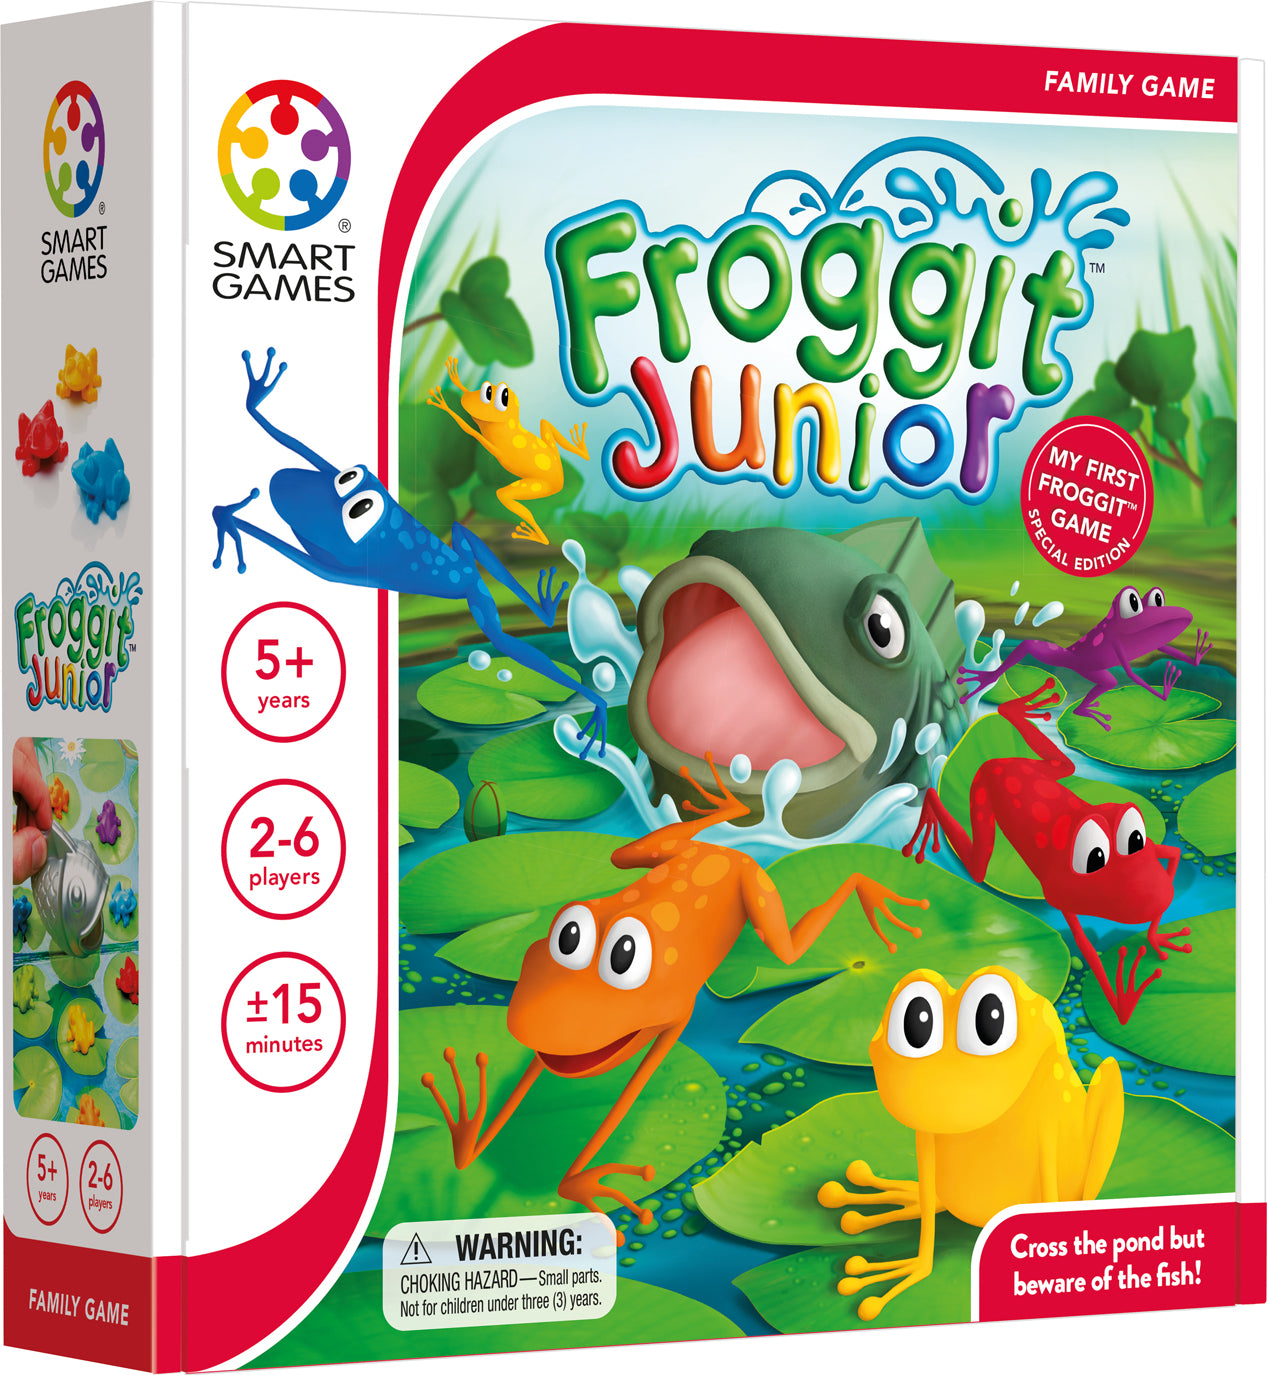 Froggit Junior